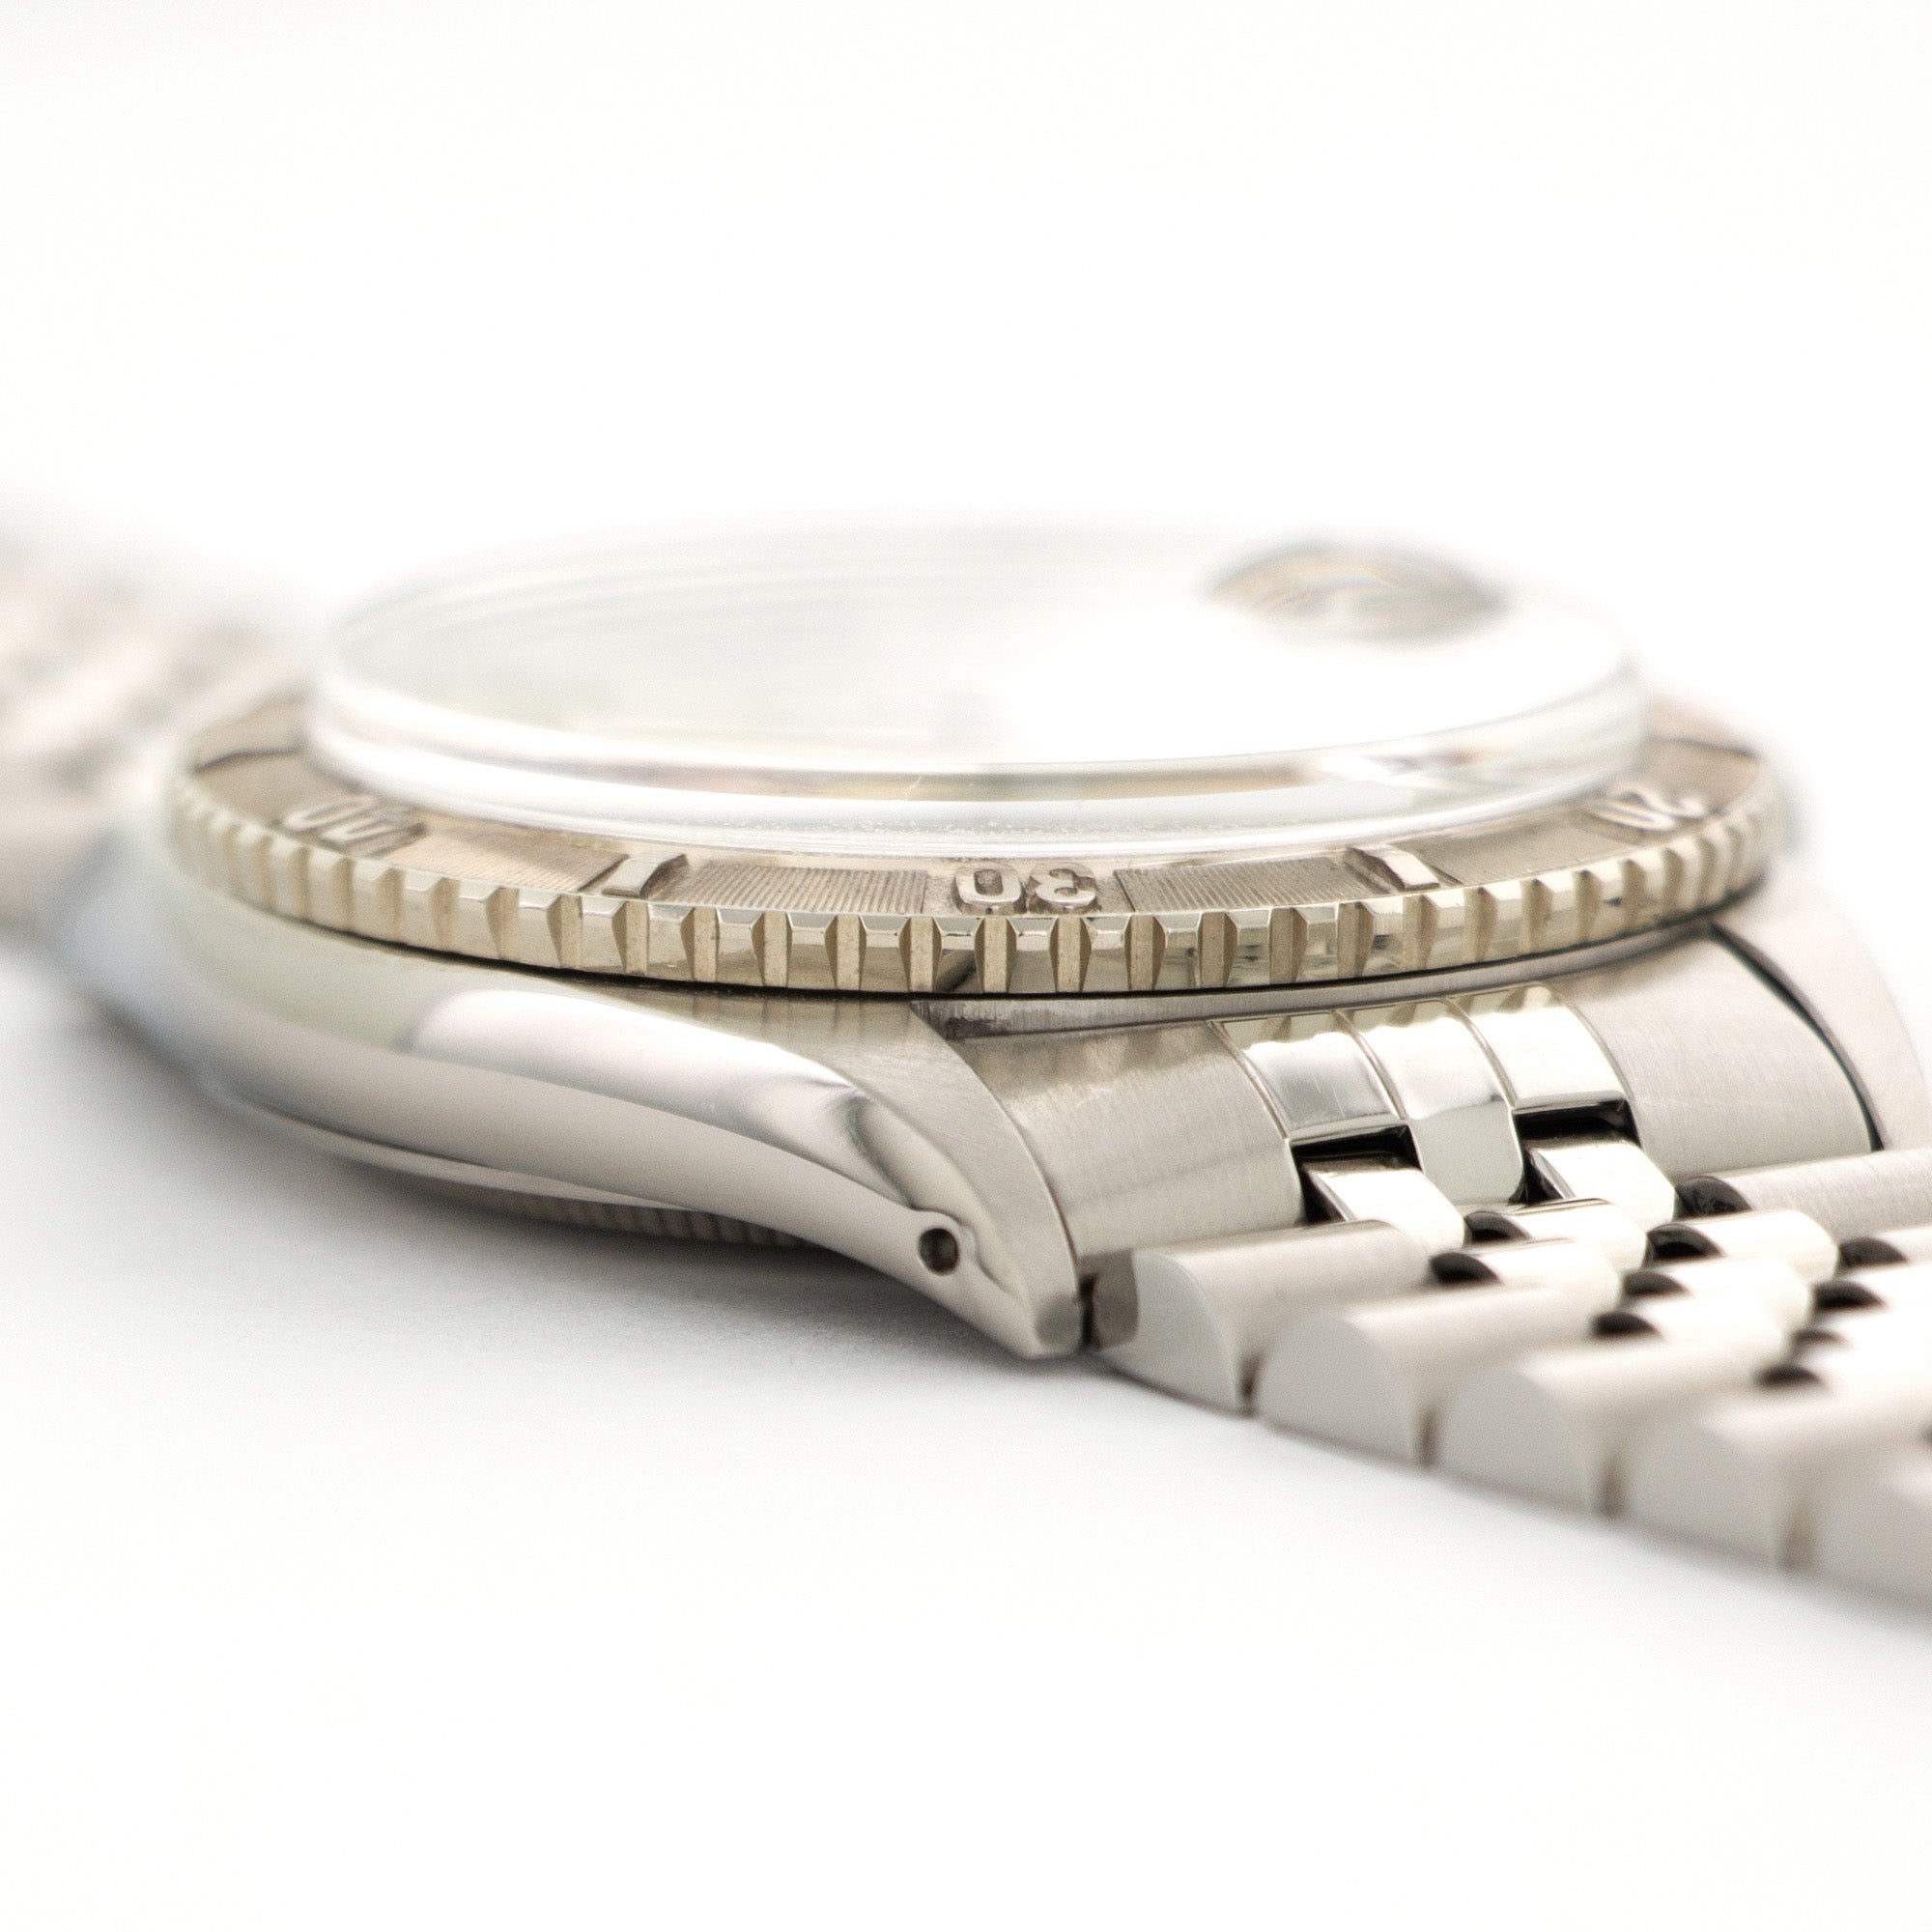 Rolex - Rolex Datejust Turnograph Watch Ref. 1625 - The Keystone Watches